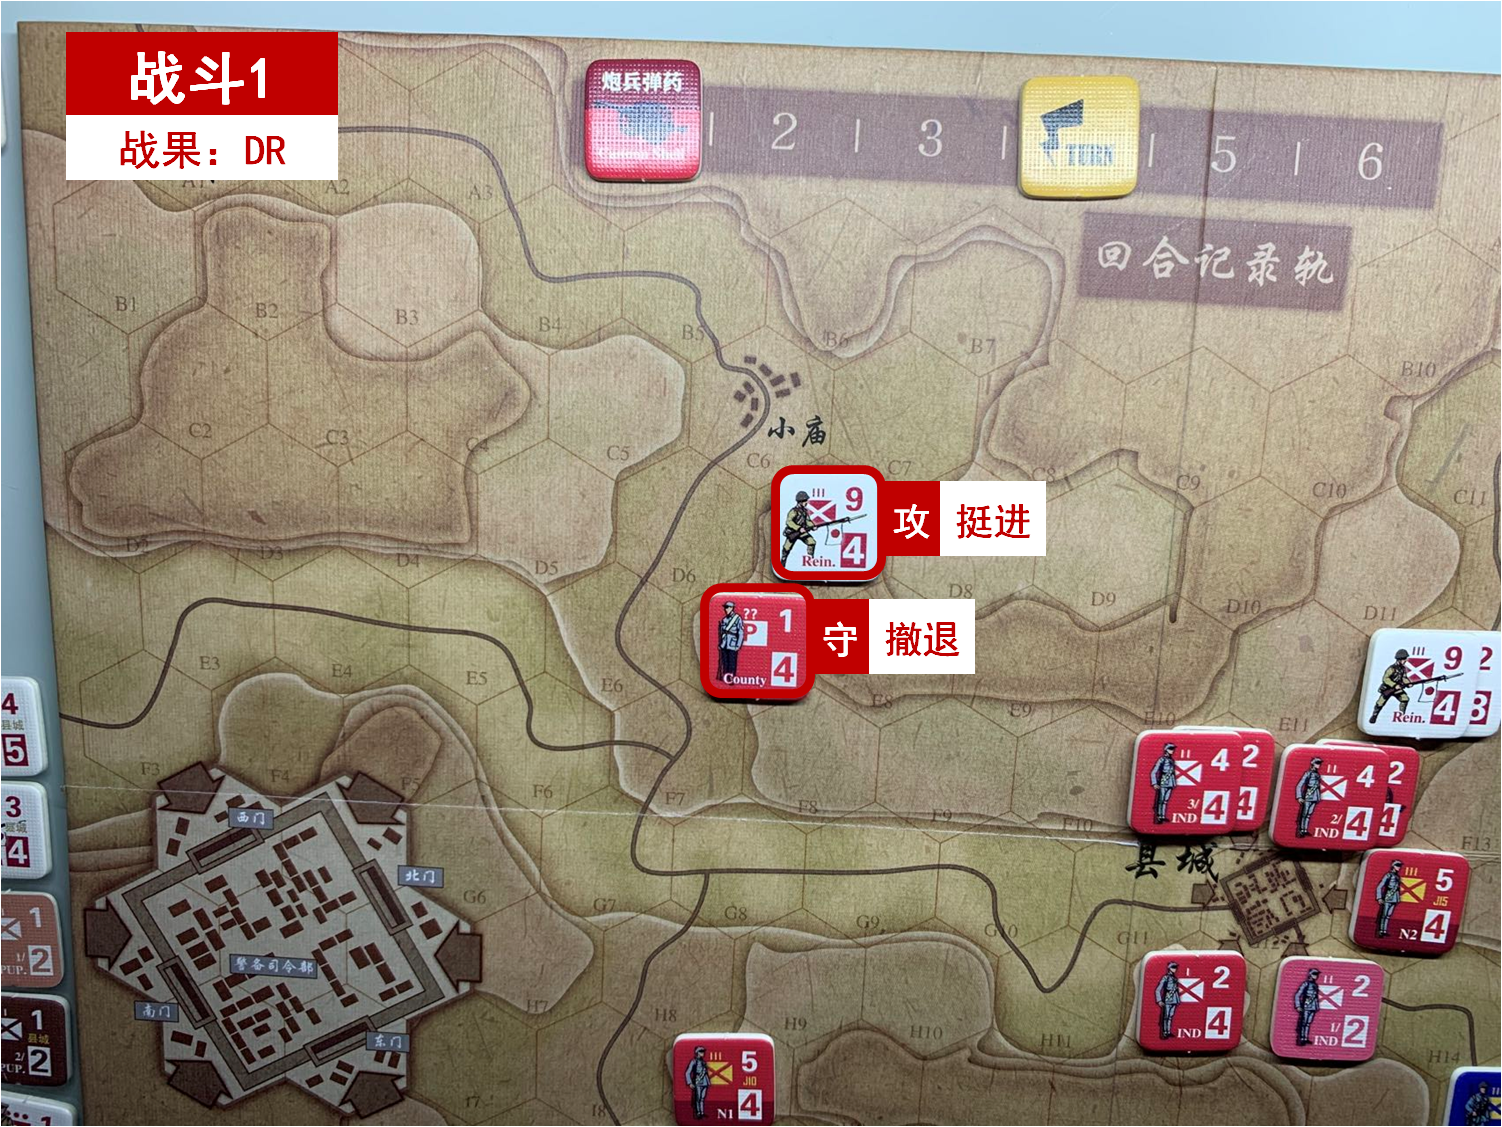 第四回合 日方戰鬥階段 戰鬥1 戰鬥結果